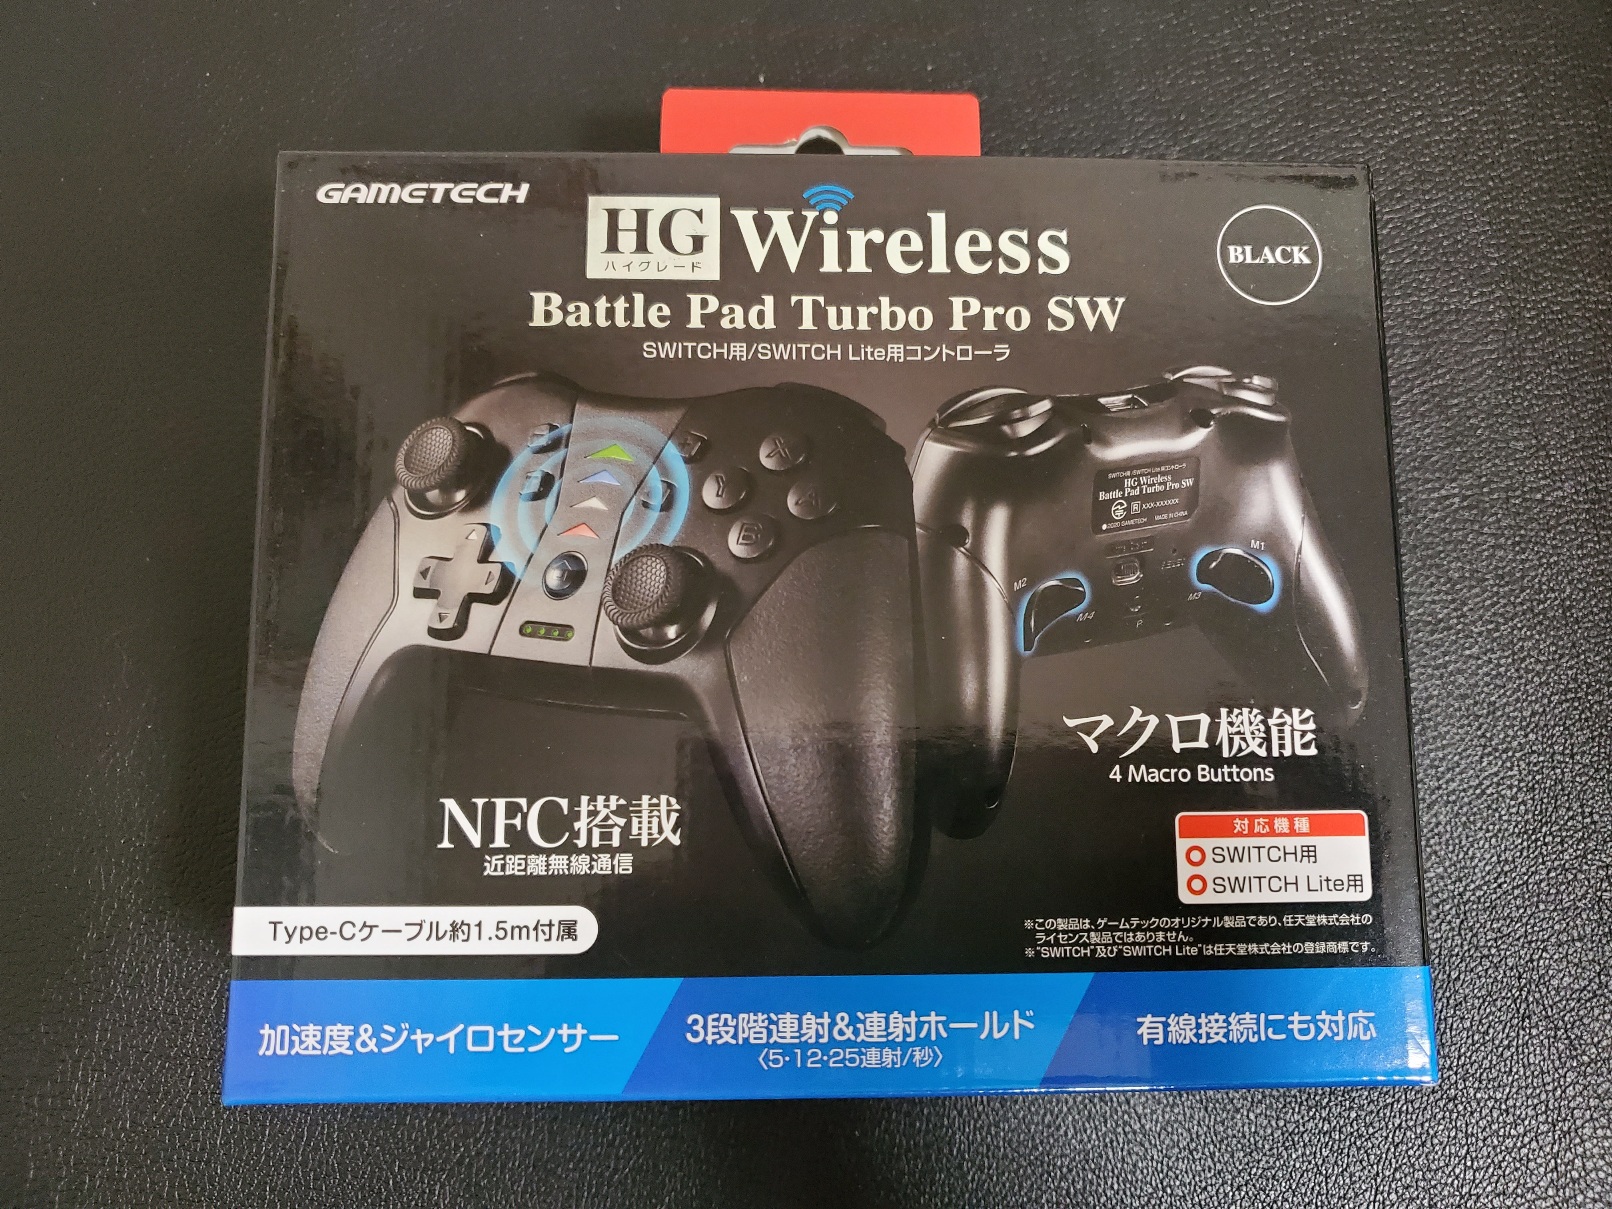 【レビュー】「HG Wireless Battle Pad Turbo Pro SW」Nintendo Switch用コントローラが超快適! 